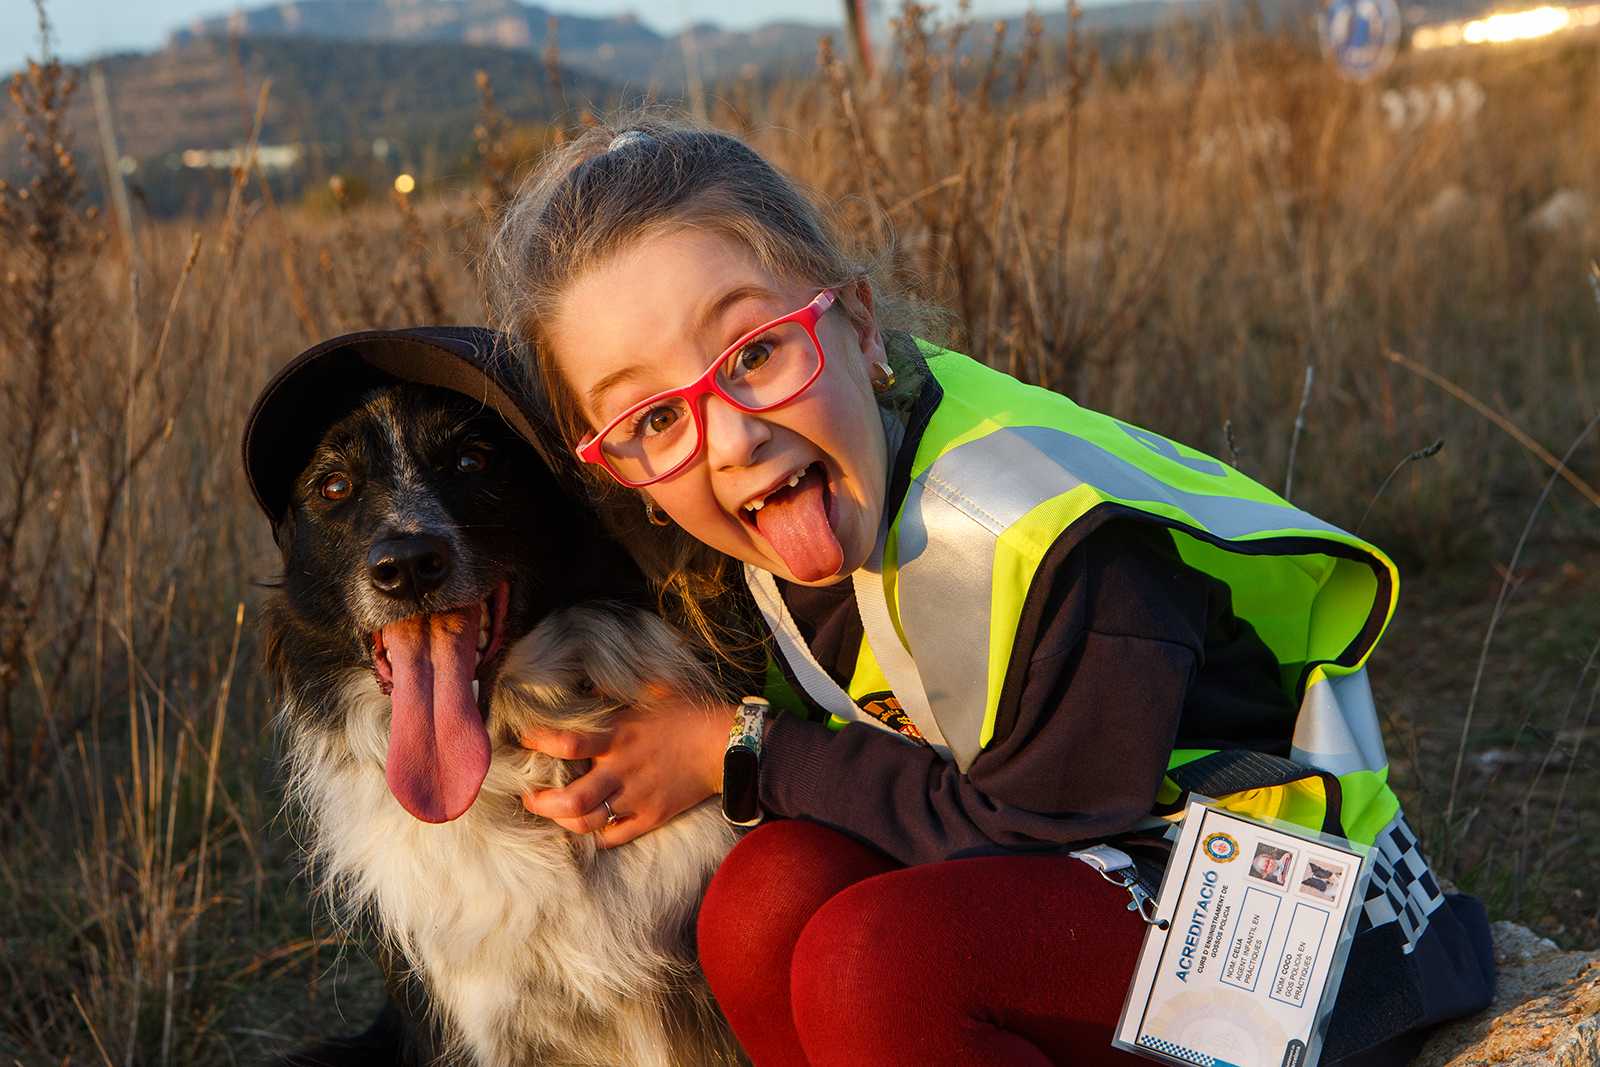 La Cèlia complint el seu somni d'entrenar a en Coco com a gos policia gràcies a la fundació Make-A-Wish i l'ajut de la Guàrdia Urbana de Barcelona